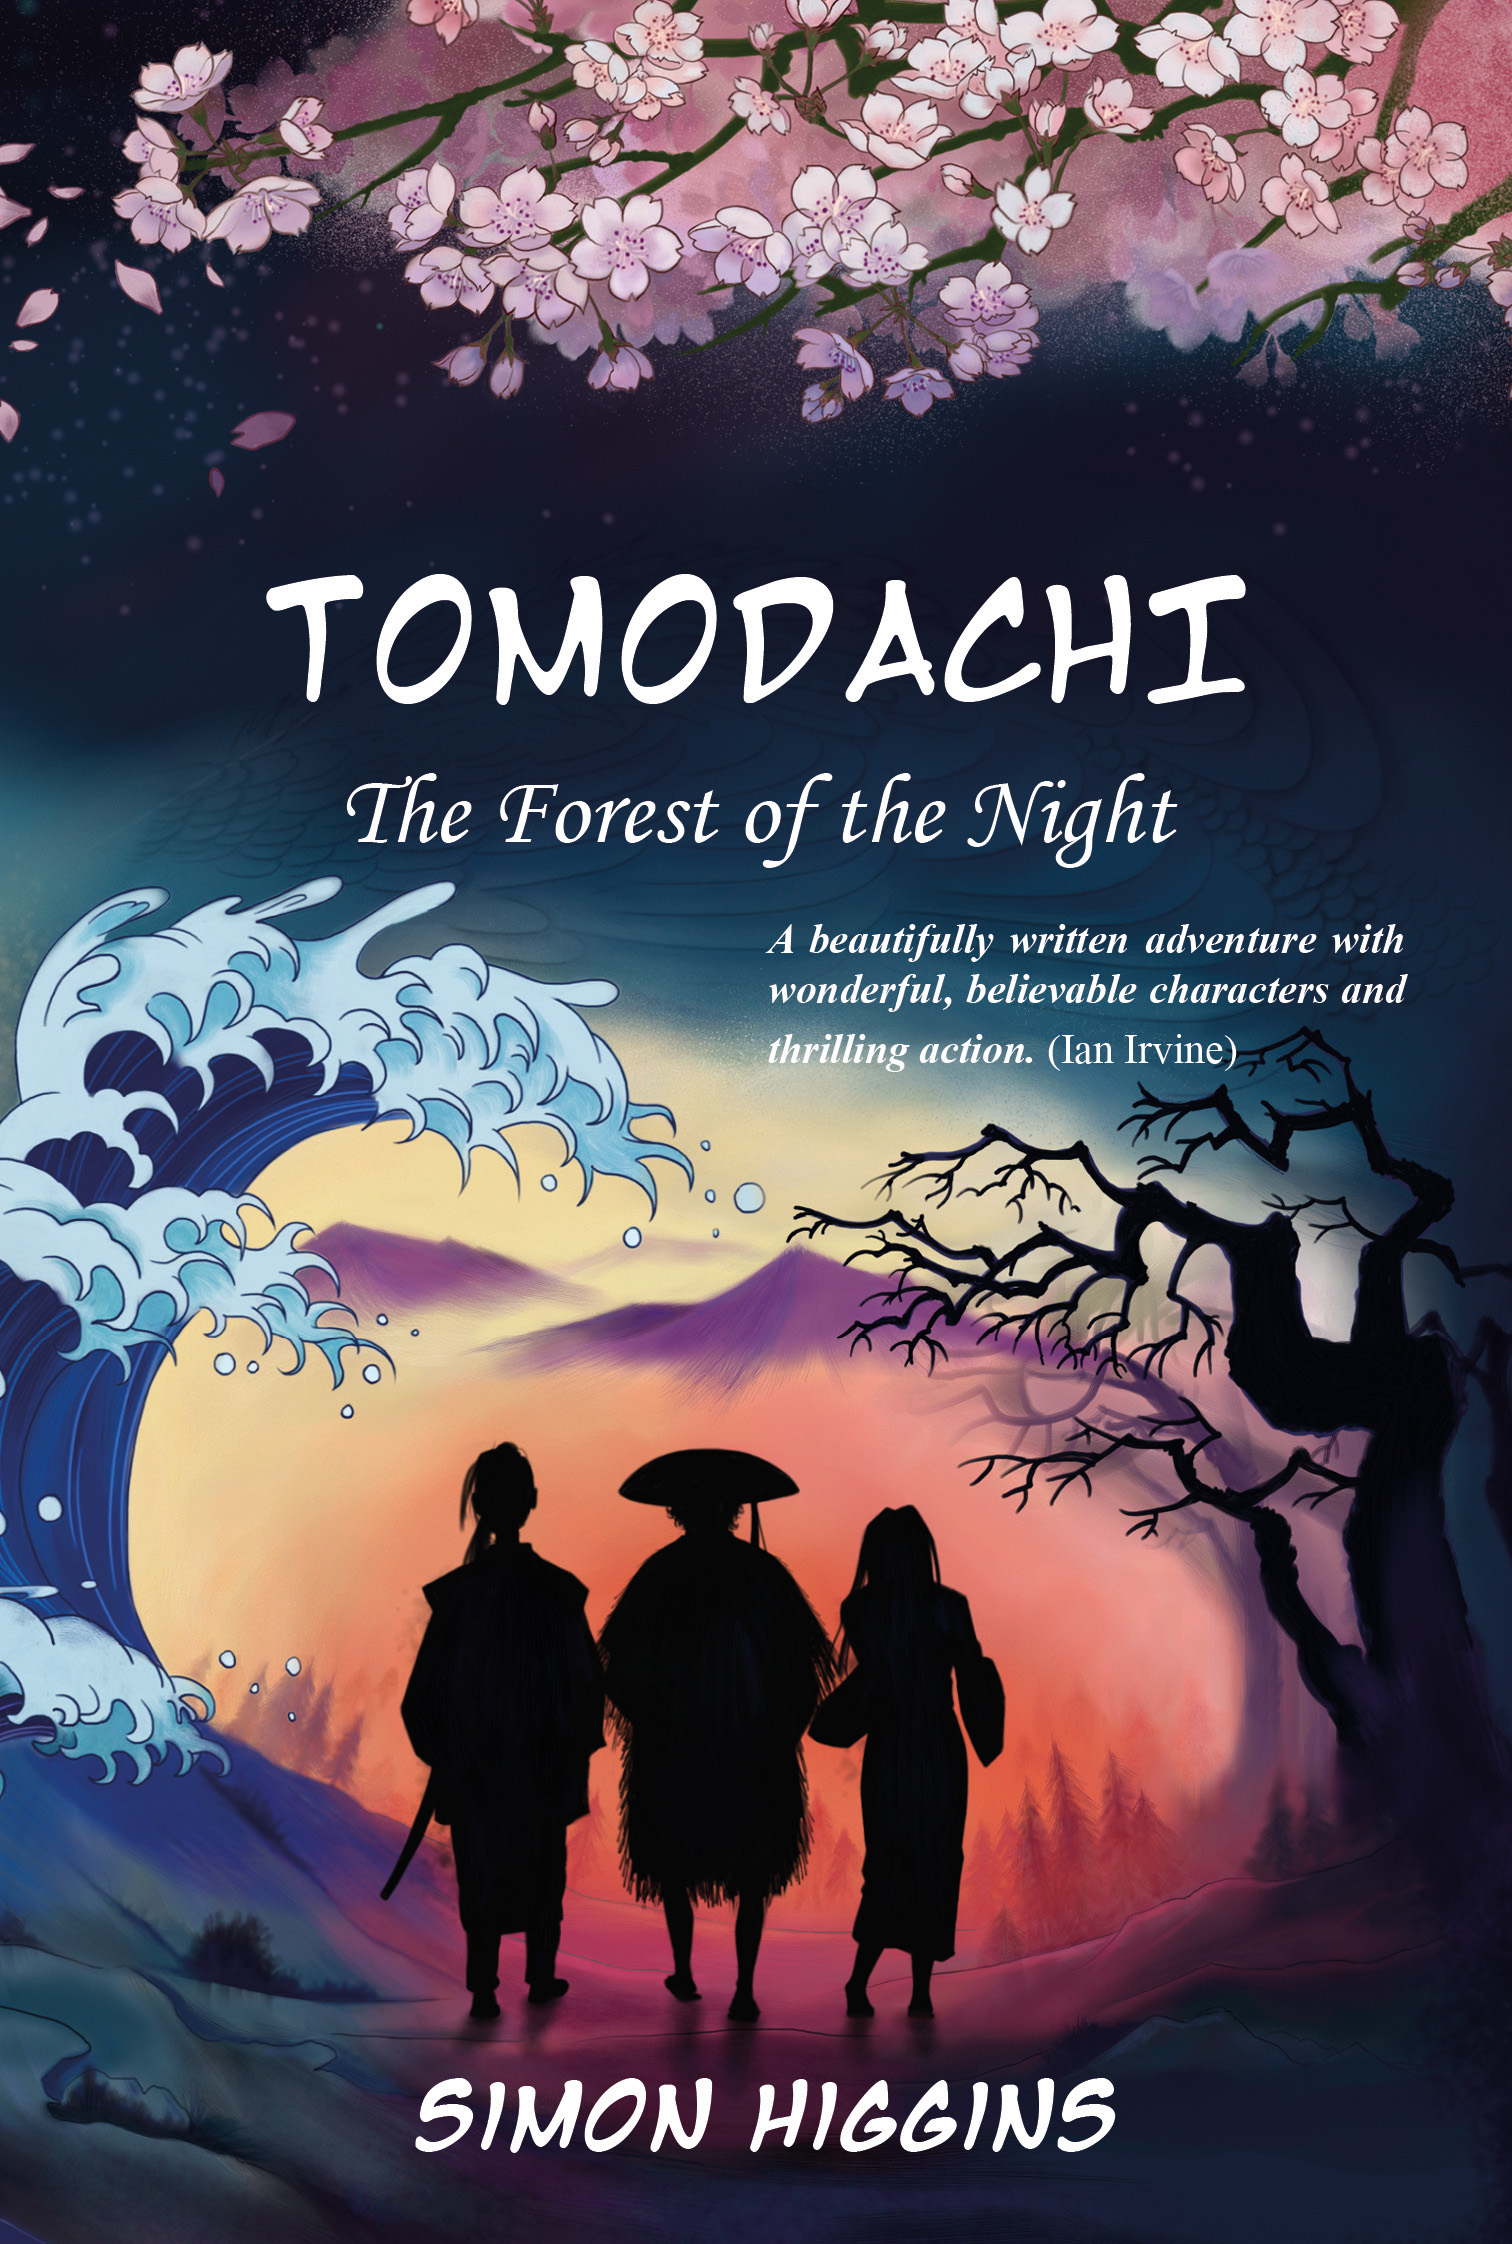 Tomodachi Book Cover Simon Higgins